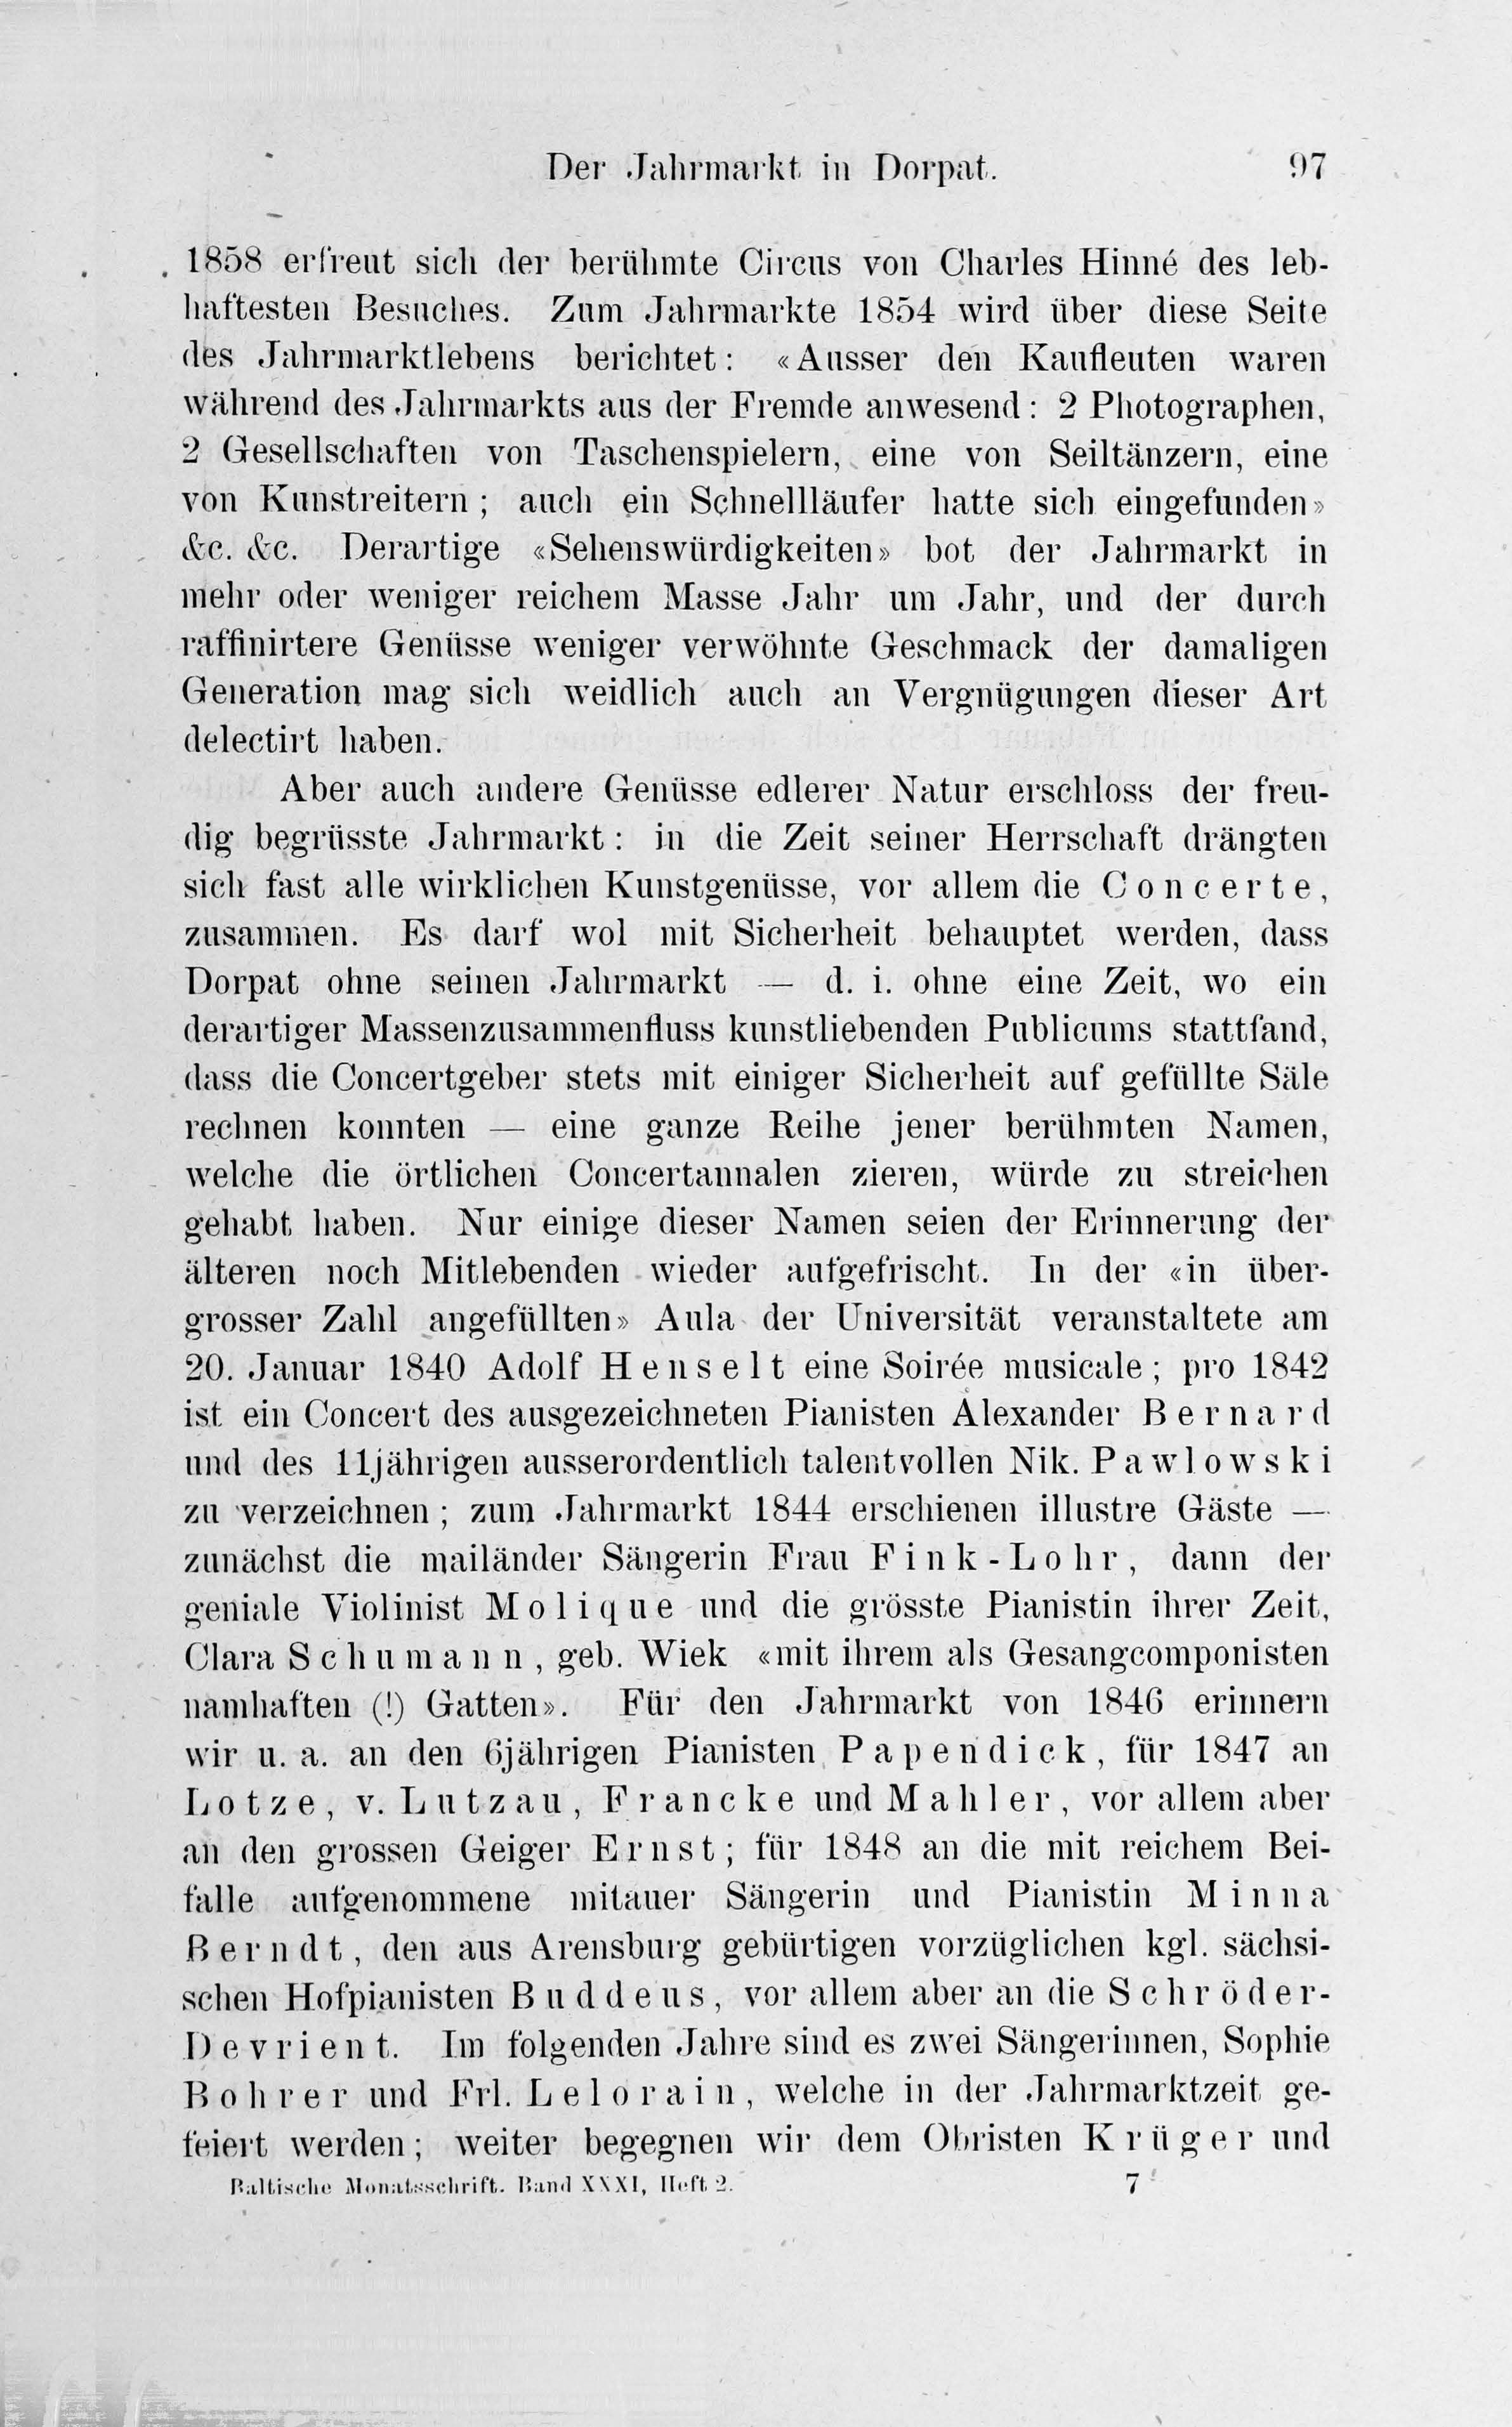 Der Jahrmarkt in Dorpat [2] (1884) | 17. Main body of text